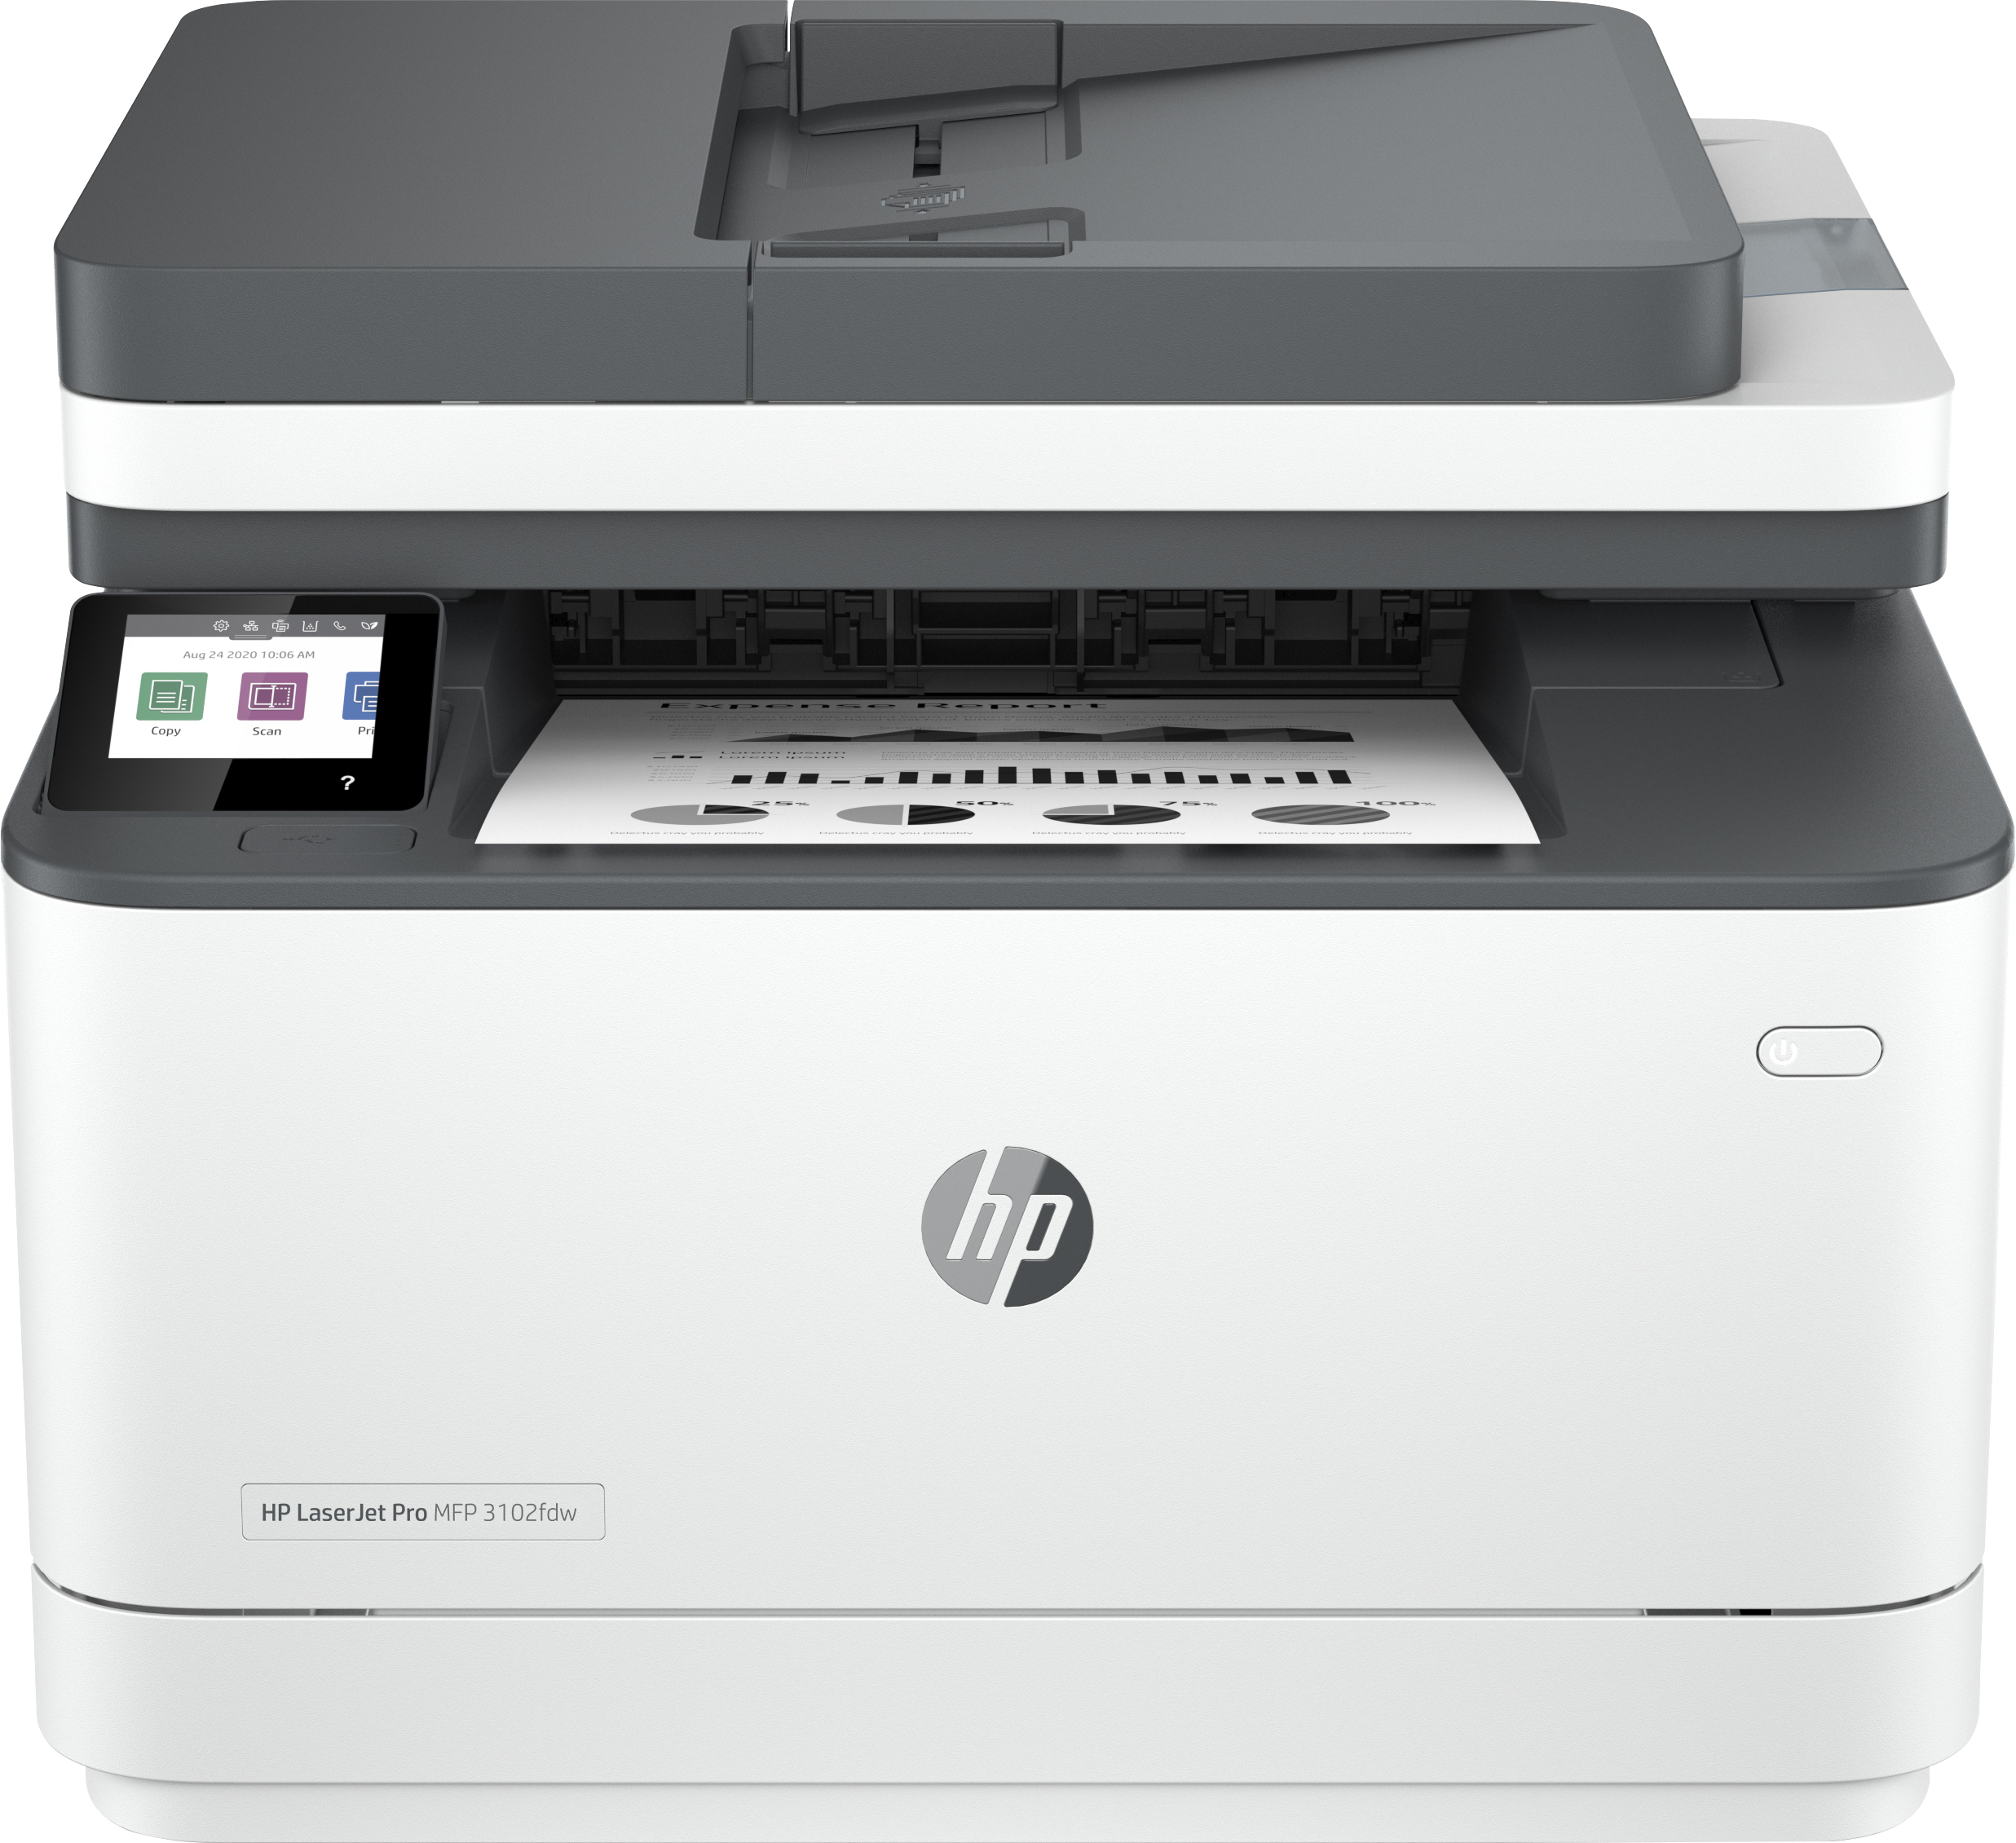 HP LaserJet Pro Imprimante multifonction 3102fdw, Noir et blanc, Imprimante pour Petites/moyennes entreprises, Impression, copie, scan, fax, Impression recto-verso. Numérisation vers e-mail. Numériser vers PDF